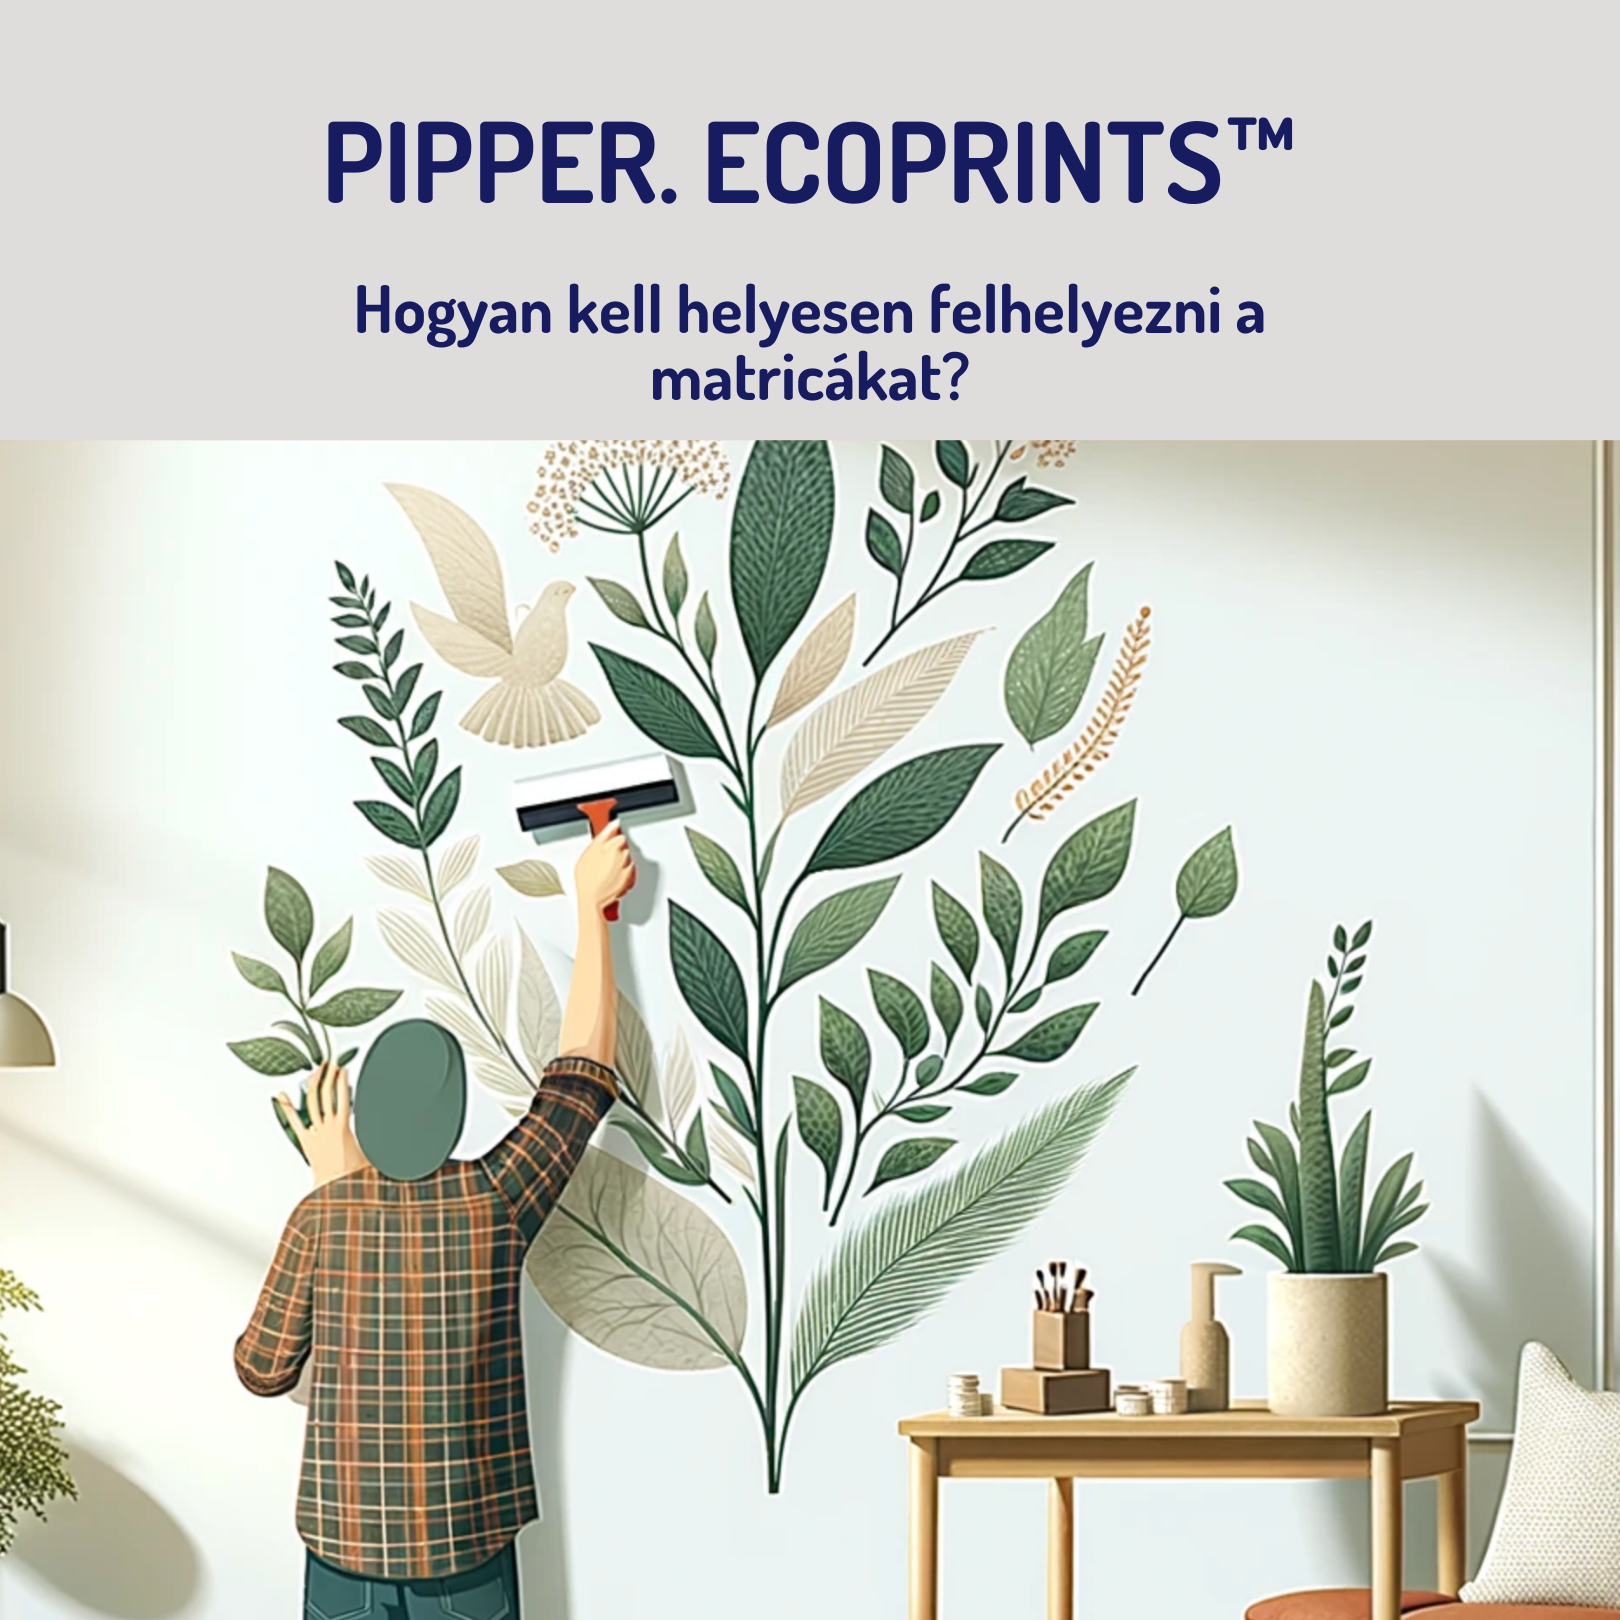 A PIPPER. EcoPrints™ matricák megfelelő felhordása